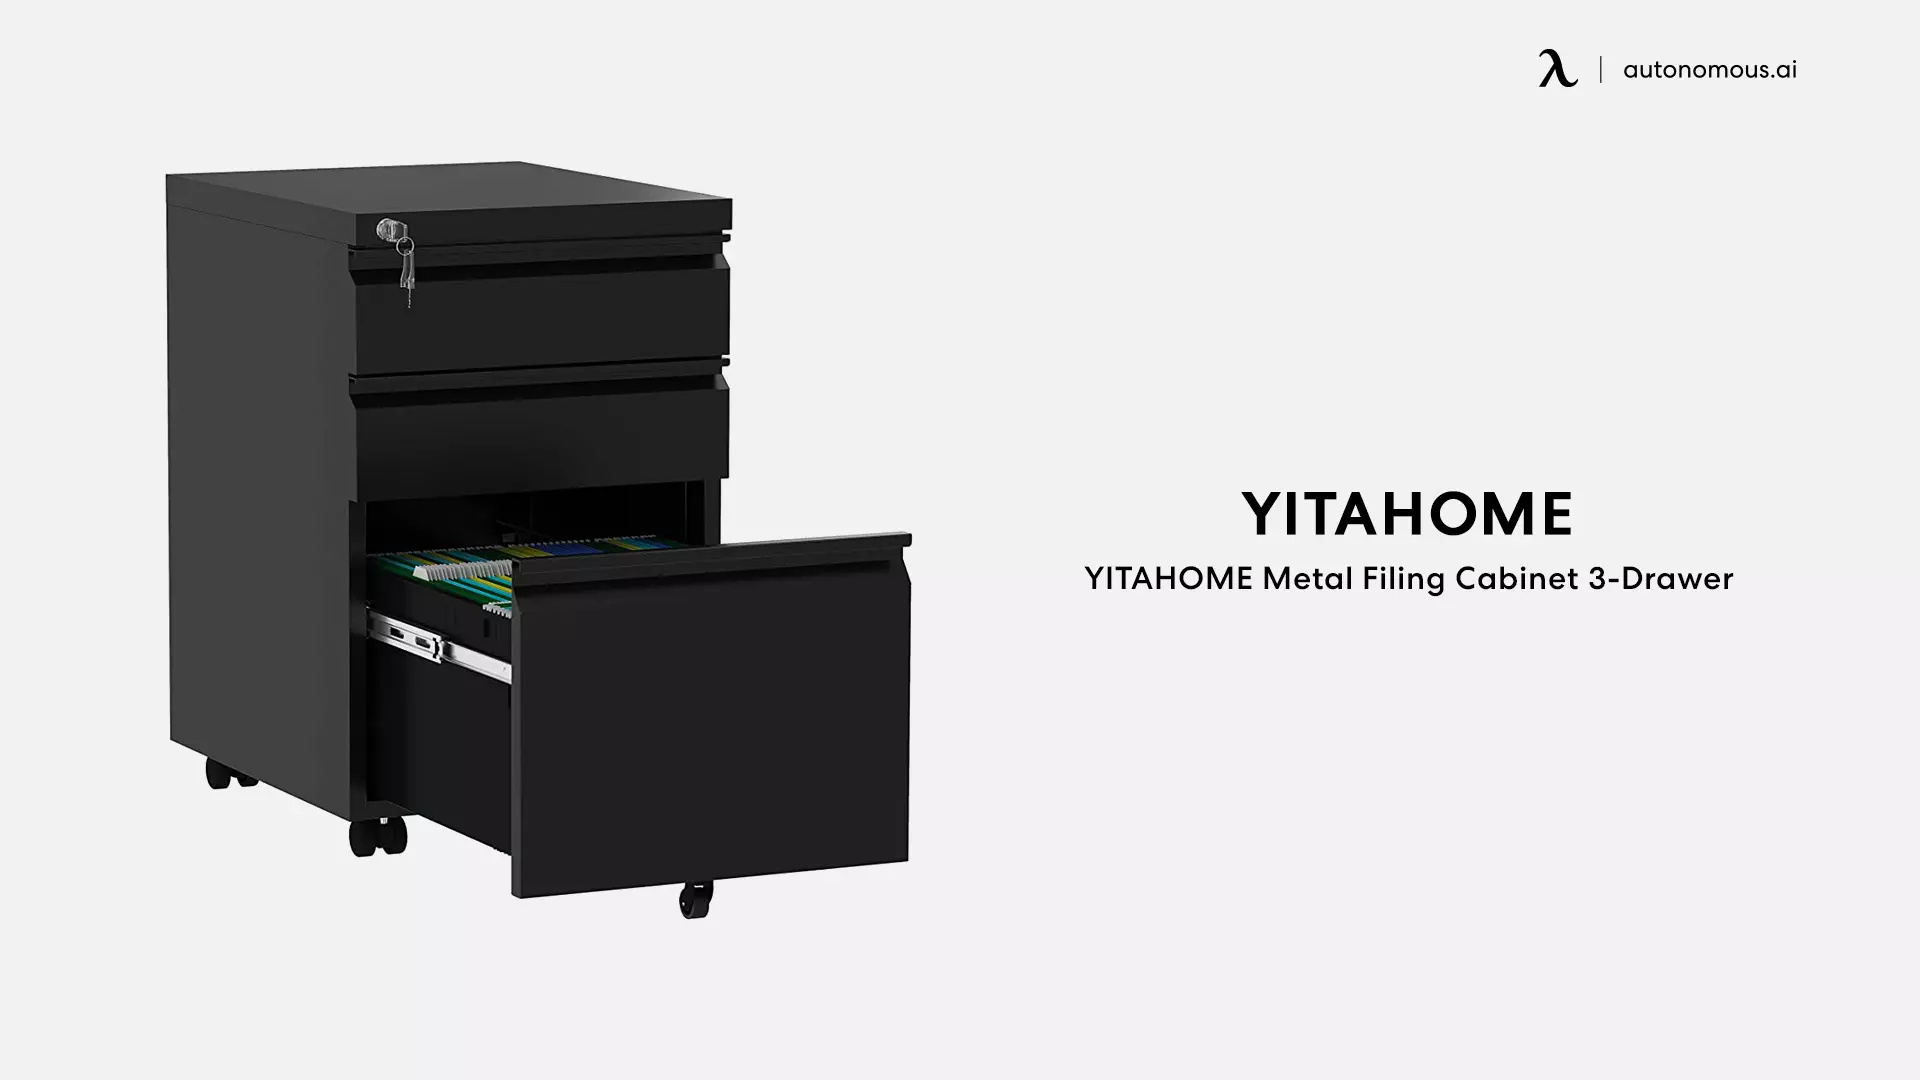 YITAHOME Metal Filing Cabinet 3-Drawer